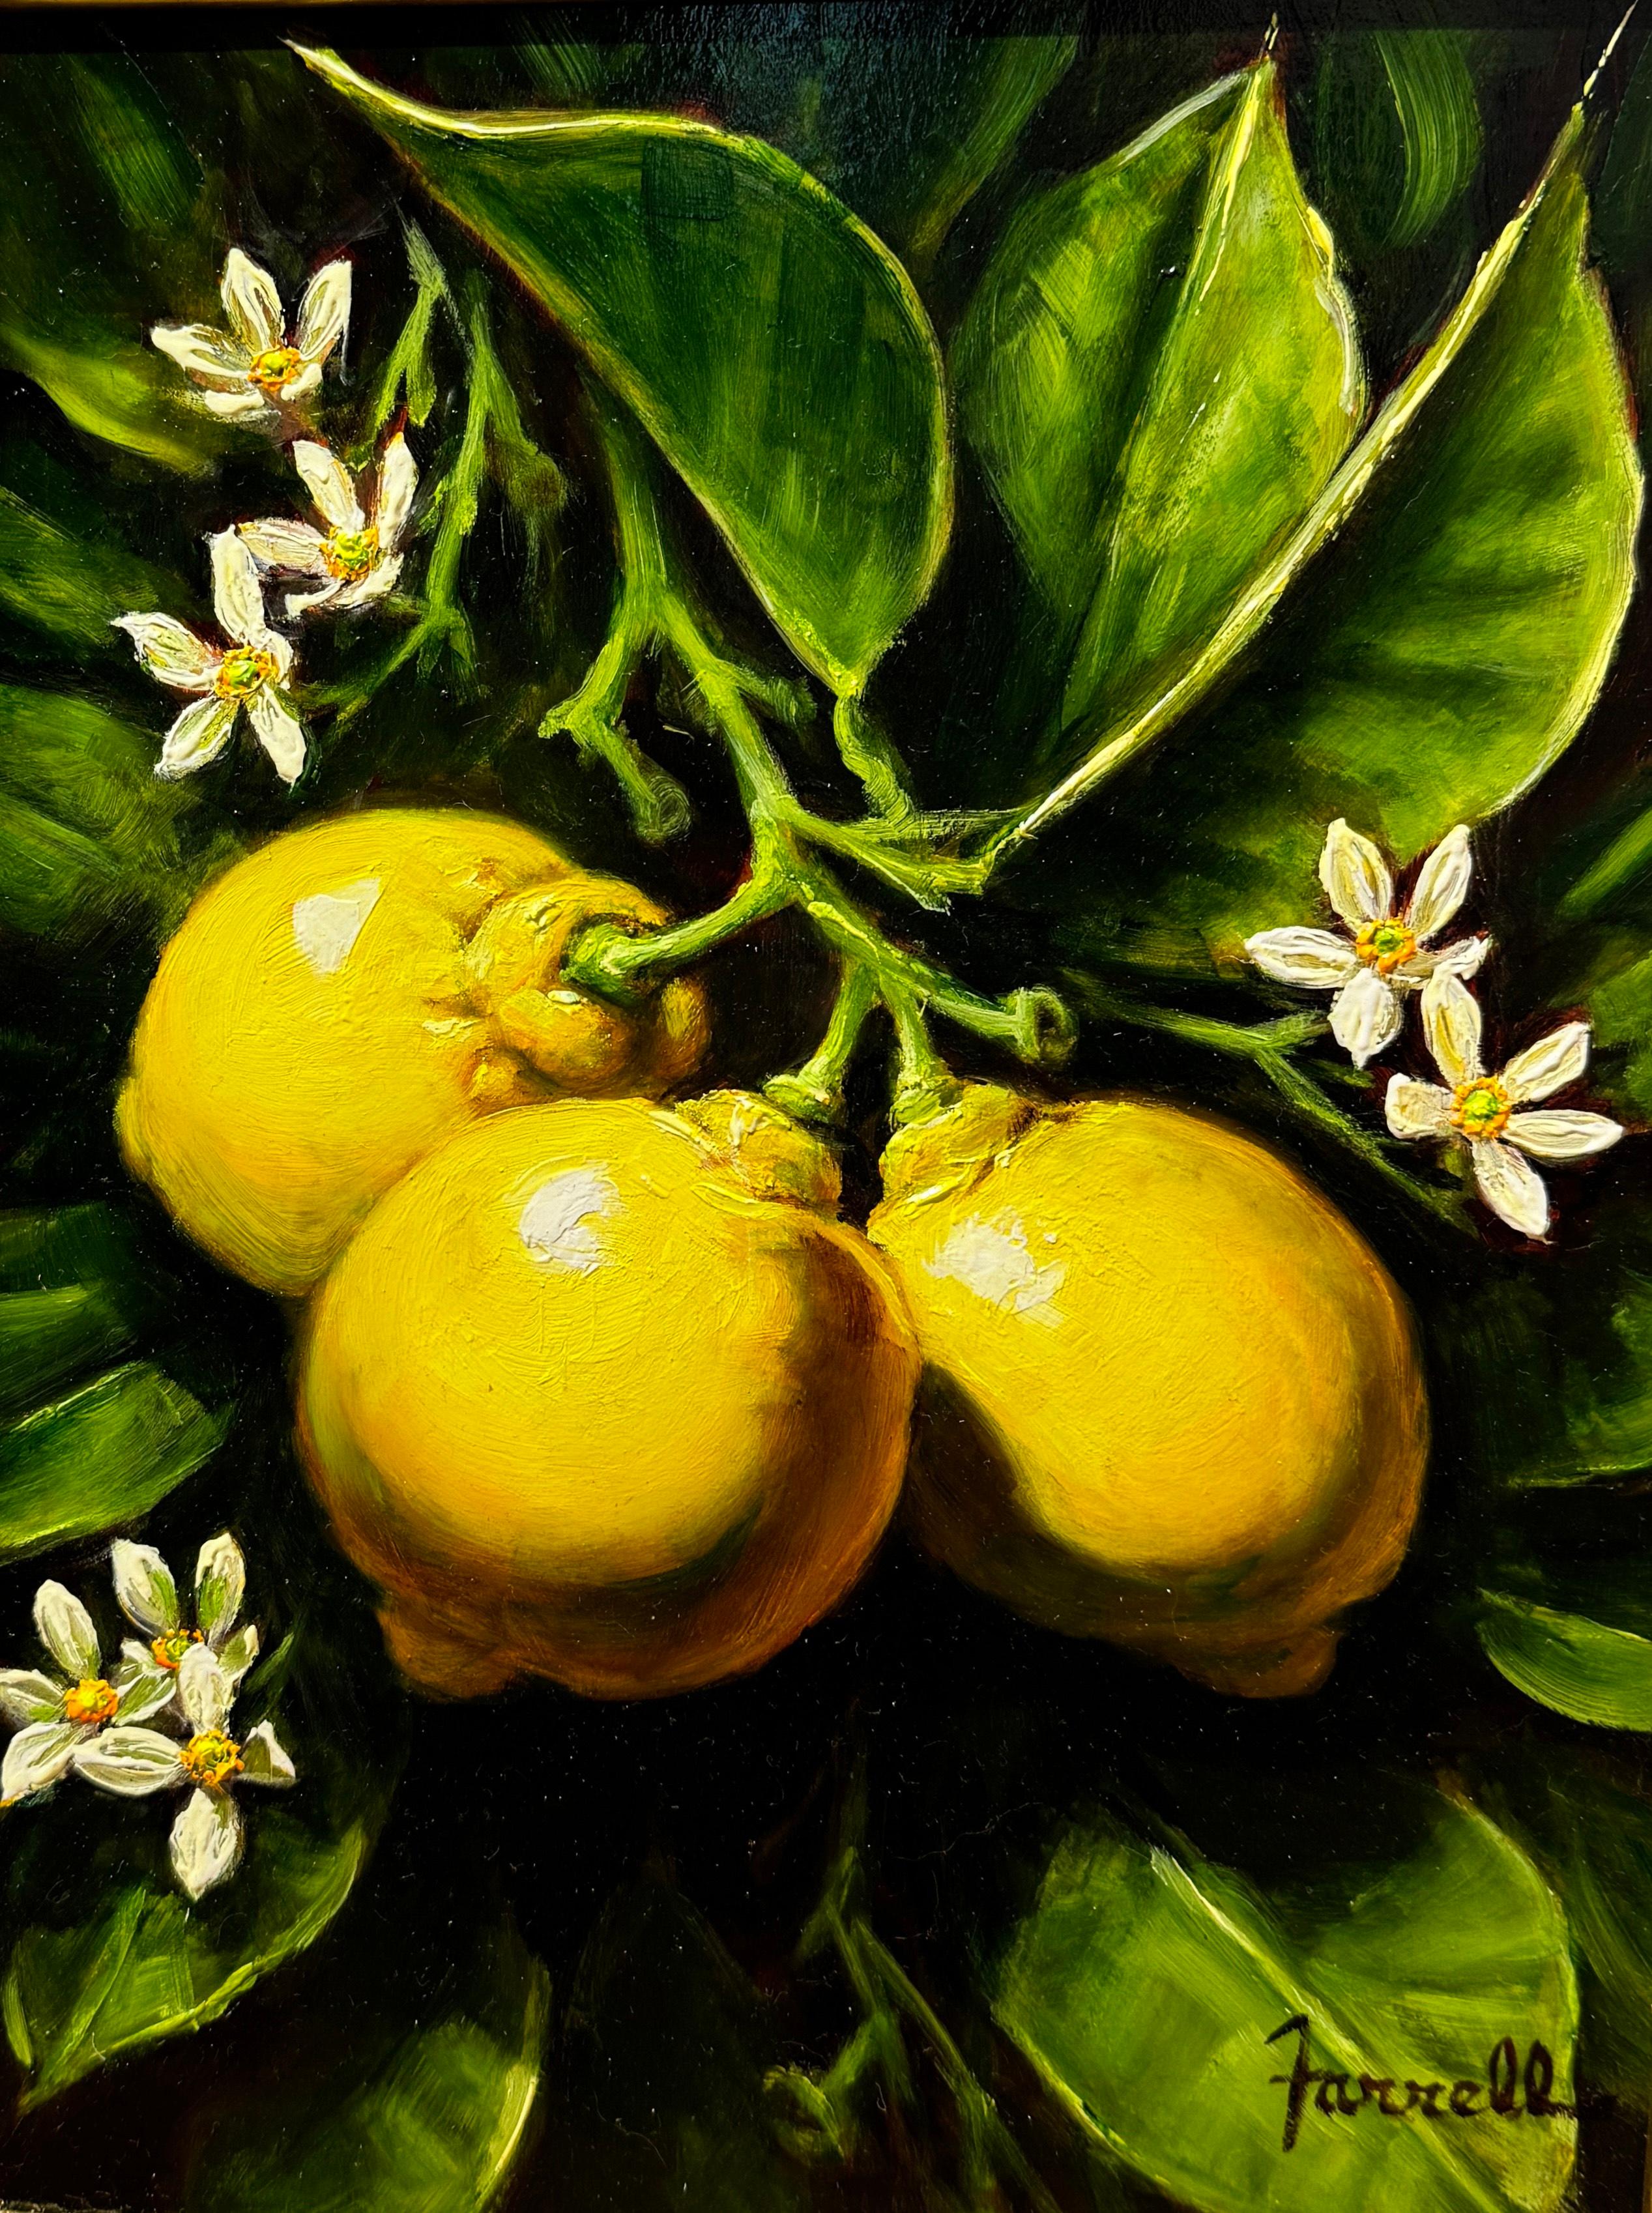 "Sweet Lemon Blossoms", ist ein 12x9 Ölgemälde auf Karton des Künstlers Sean Farrell. Es handelt sich um ein Arrangement von drei Zitronen, die noch am Stiel mit ihren Blättern hängen. Die sanften organischen Kurven der Blätter sorgen für Bewegung